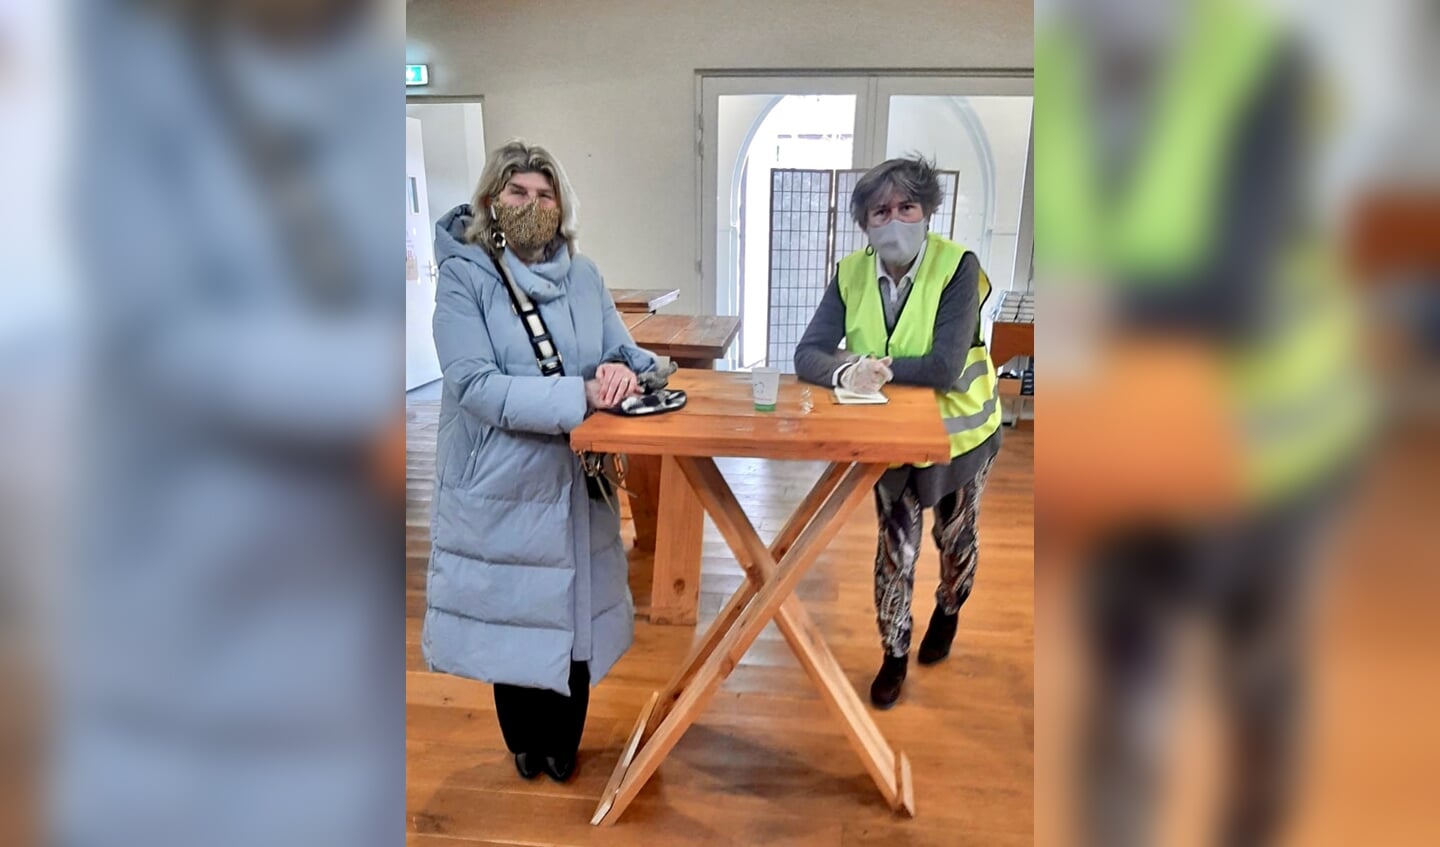 Wethouder Madeleine Bakker bezocht op de verkiezingsdag het stembureau in de Centrumkerk in Bilthoven om de vrijwilligers te bedanken. Naast haar vrijwilliger Rosemarie Becker (r).